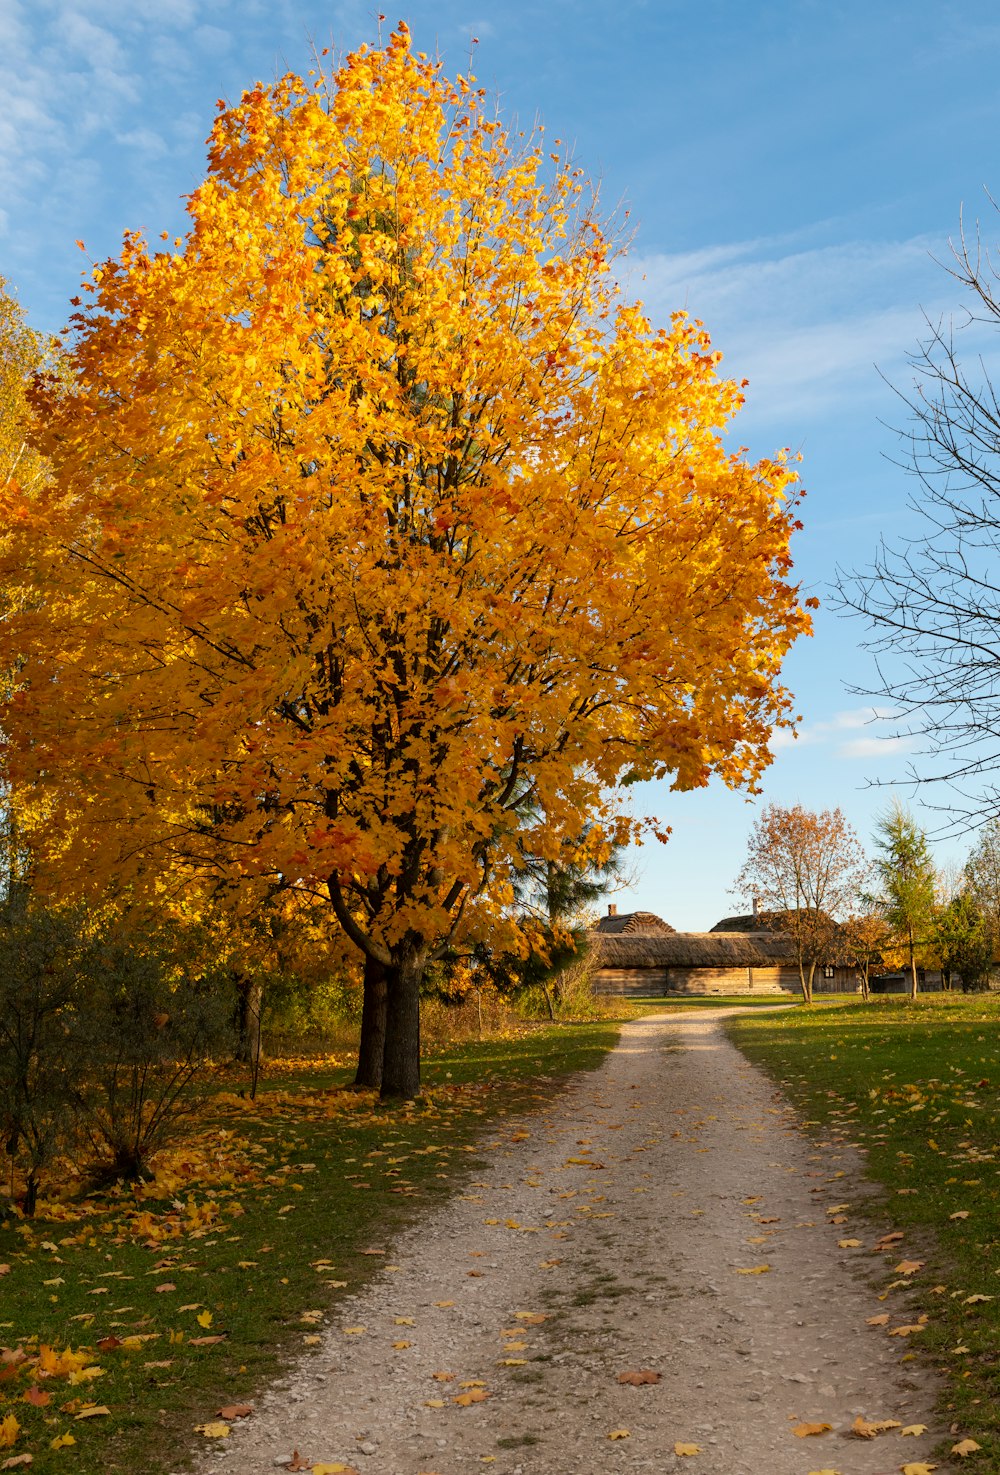 Un albero con foglie gialle foto – Alberi Immagine gratuita su Unsplash